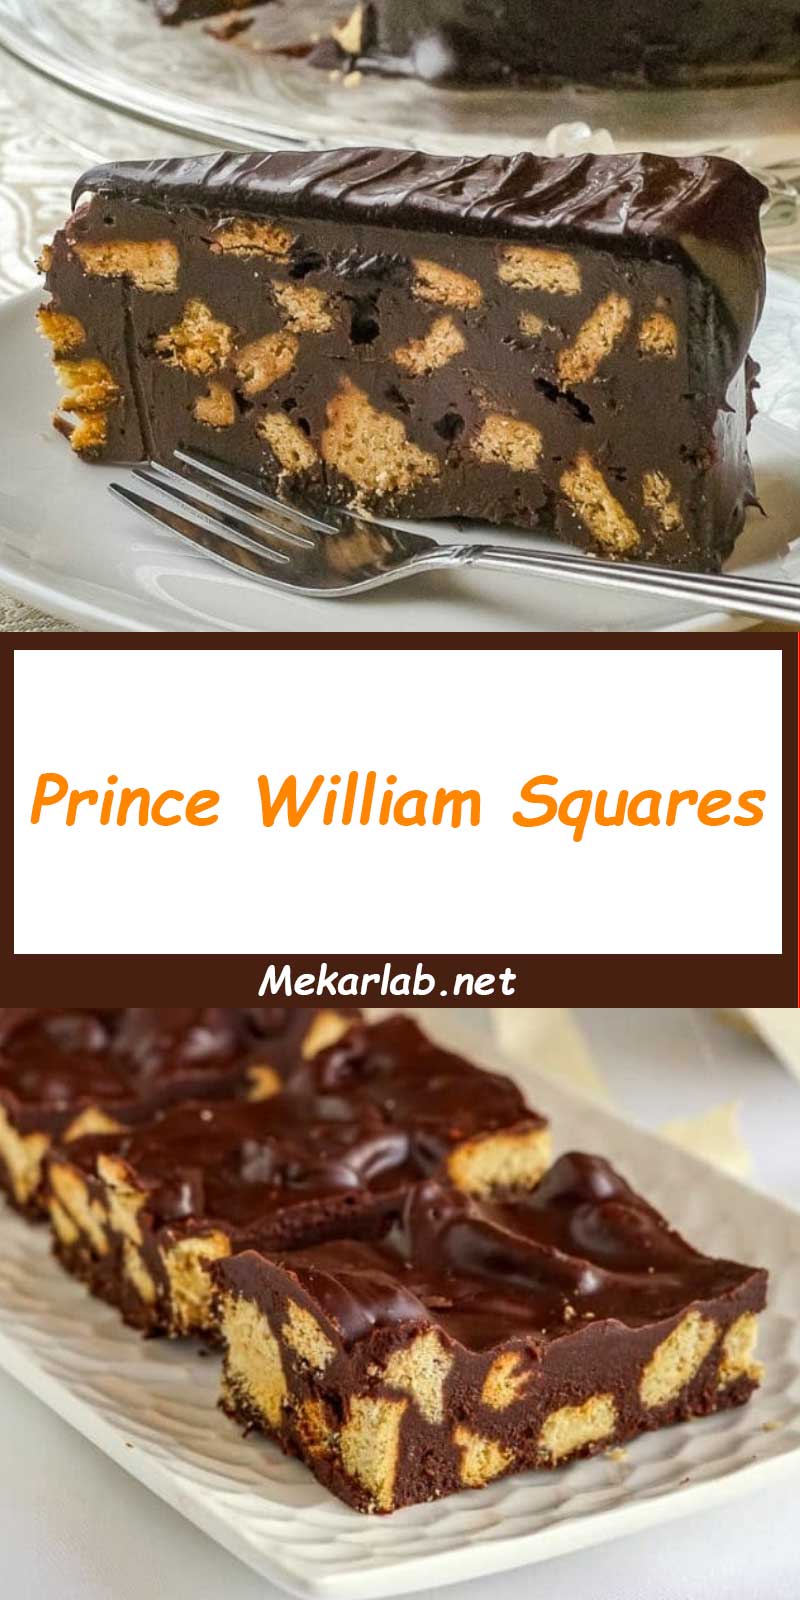 Prince William Squares